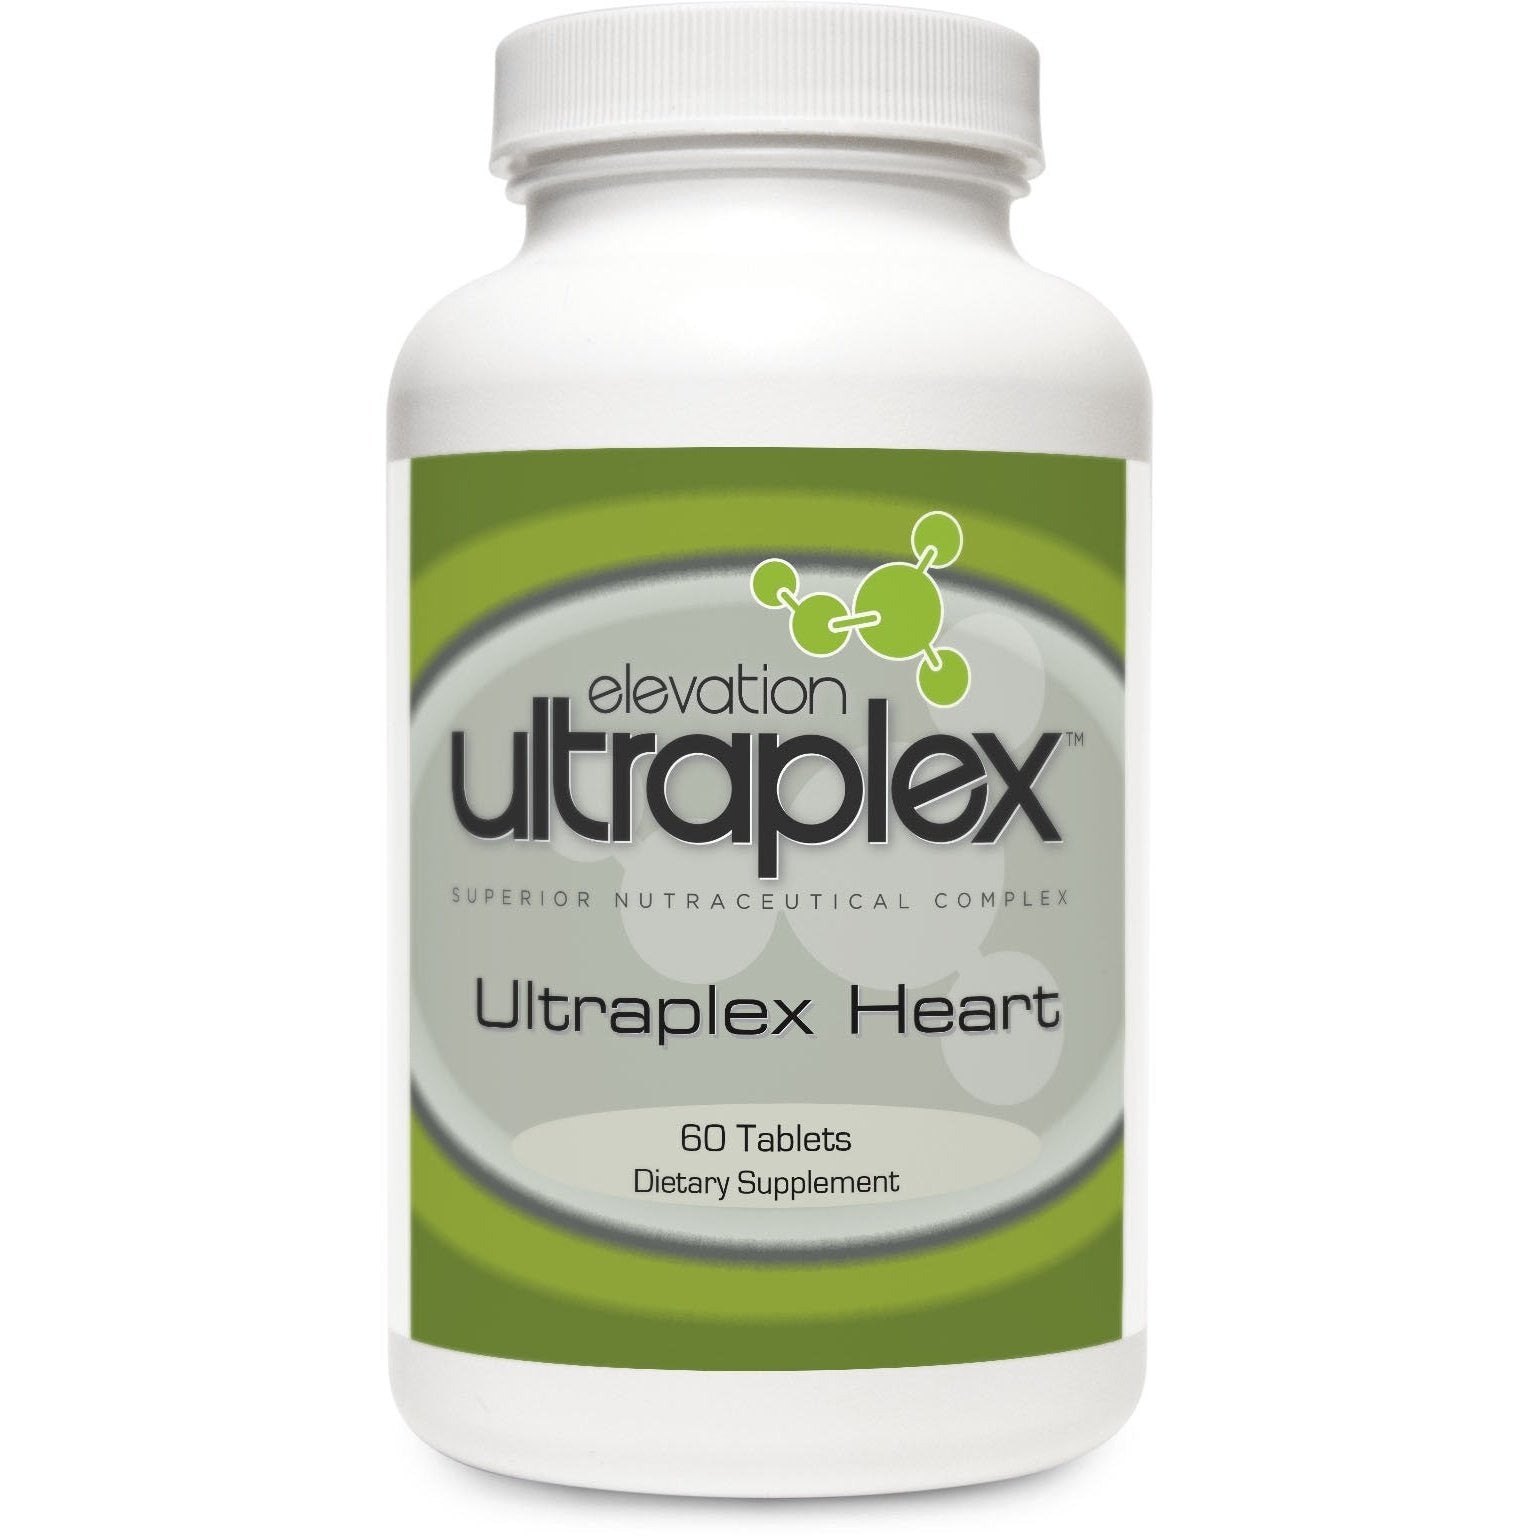 Ultraplex Heart 60 Tablets